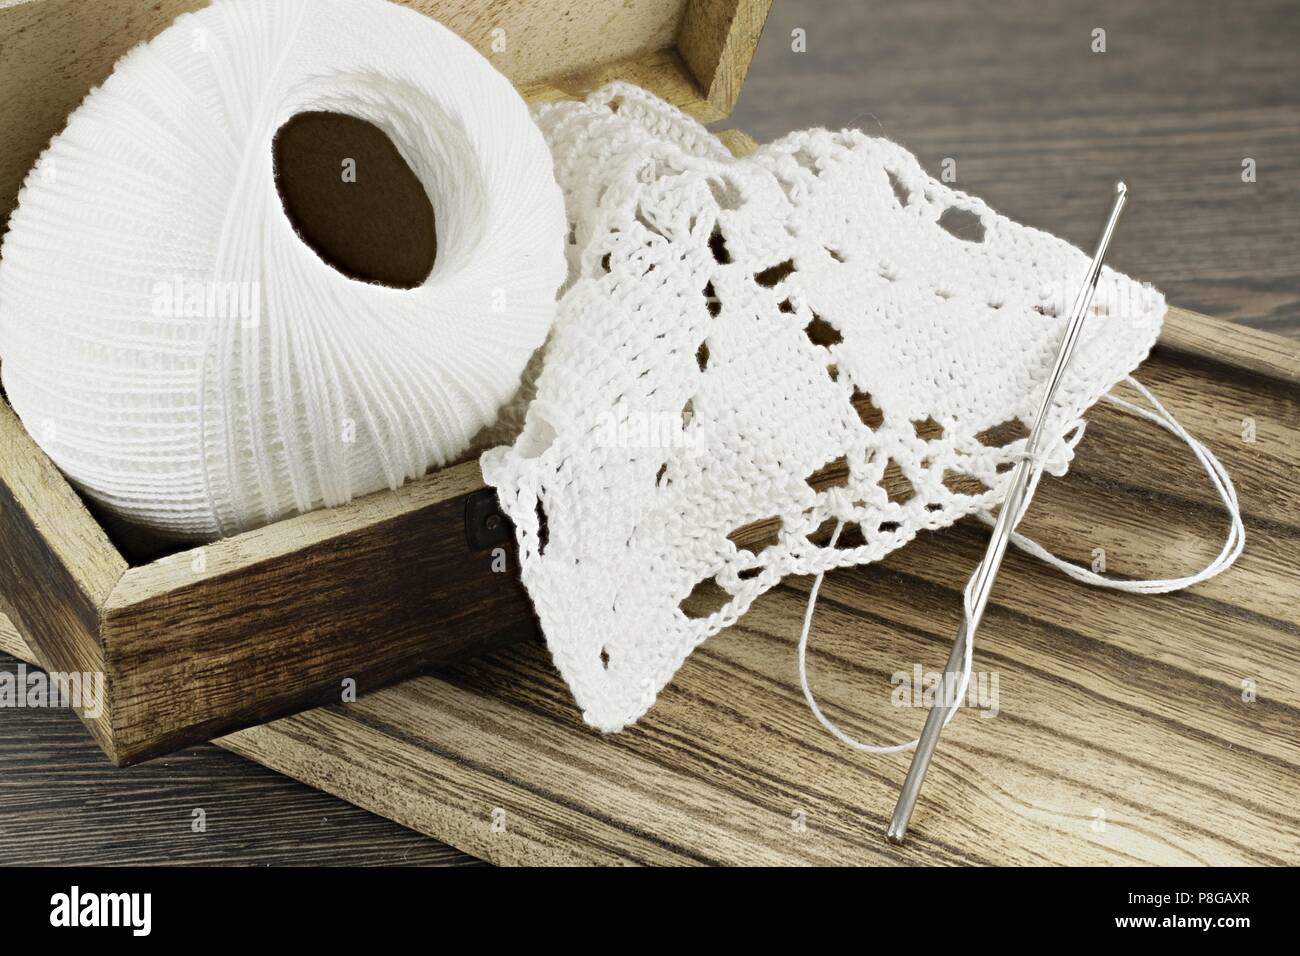 Handmade crochet doily and white yarn Stock Photo